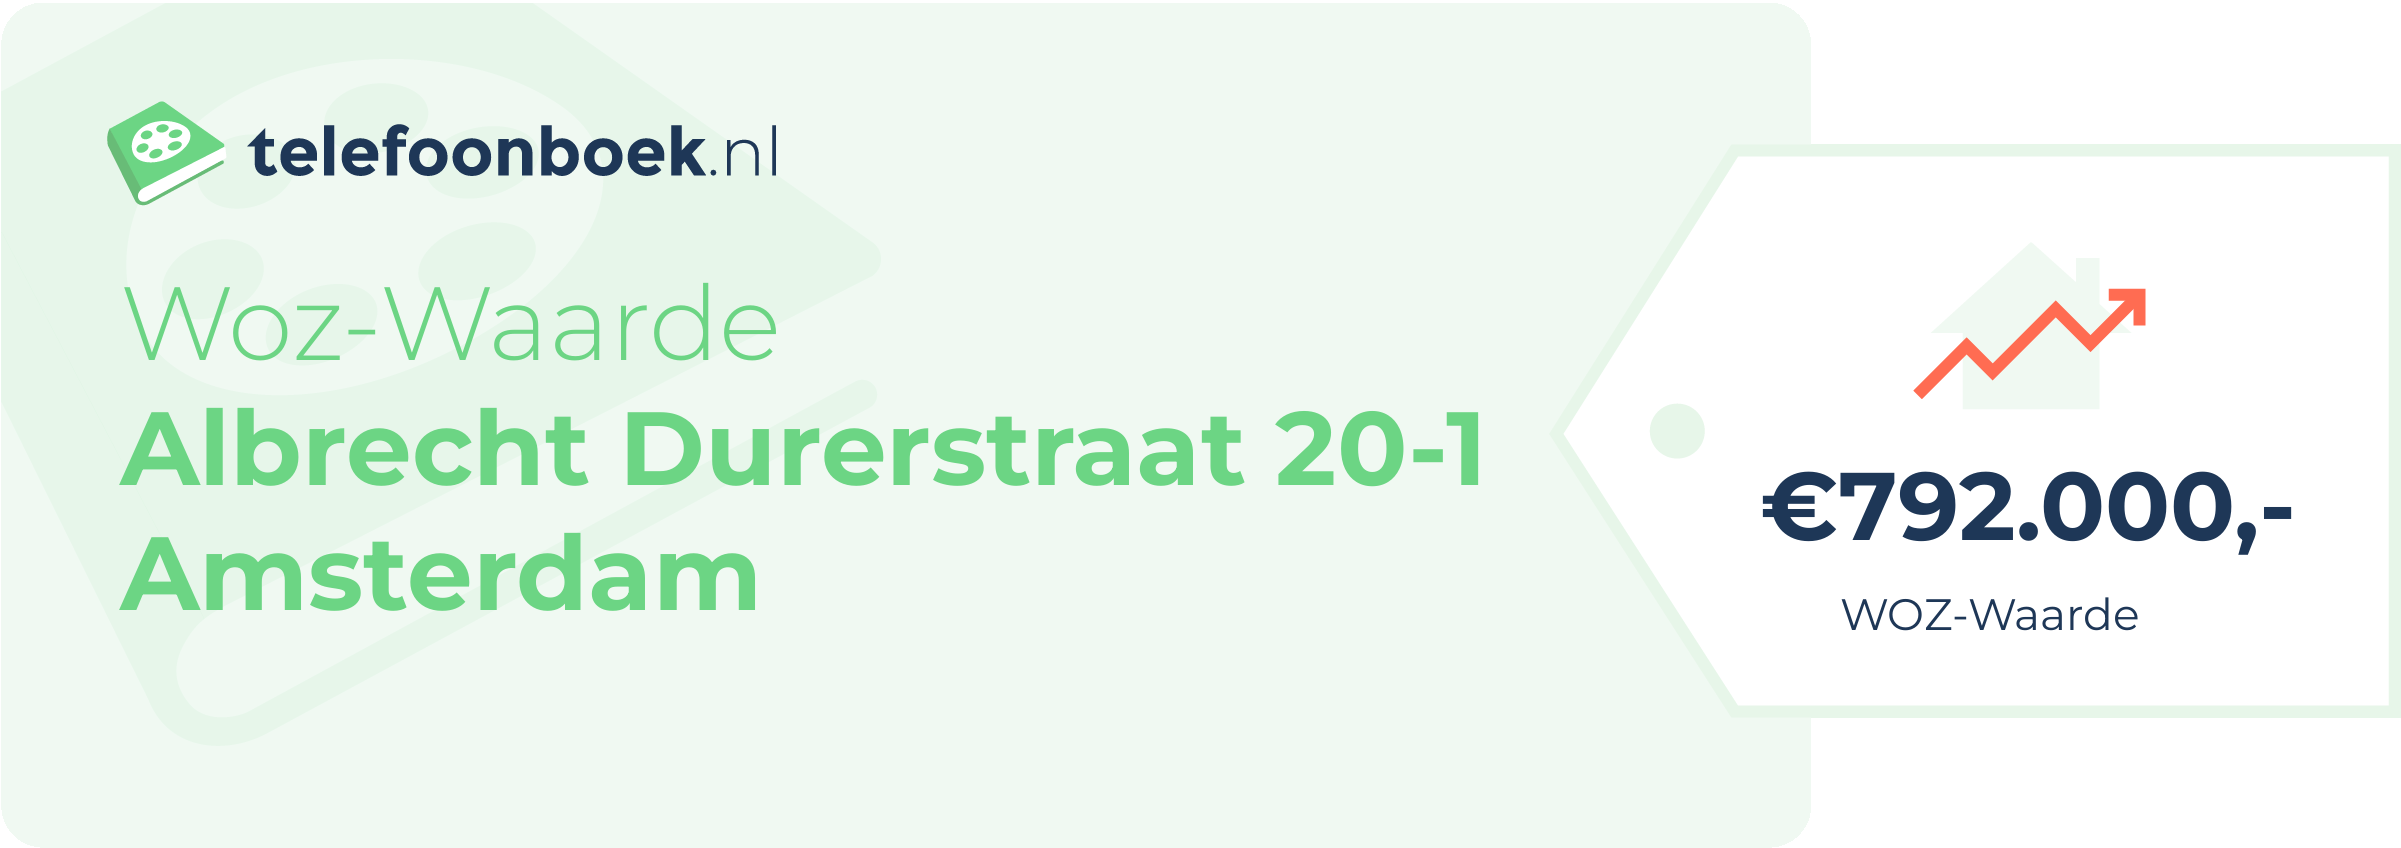 WOZ-waarde Albrecht Durerstraat 20-1 Amsterdam